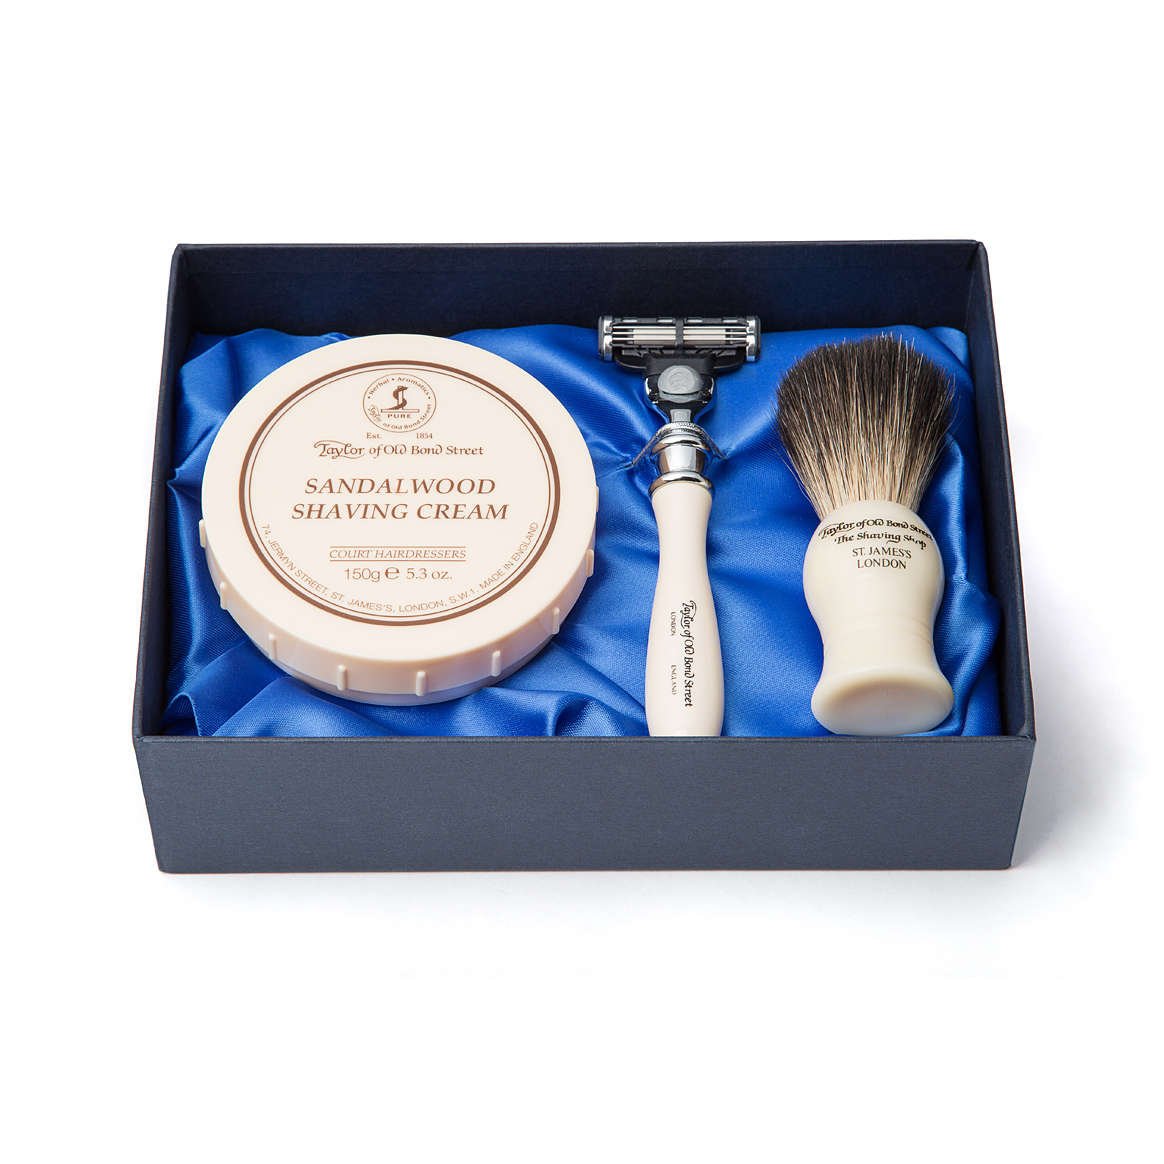 Wet shave starter gift sets of razor, brush and shaving cream bowl